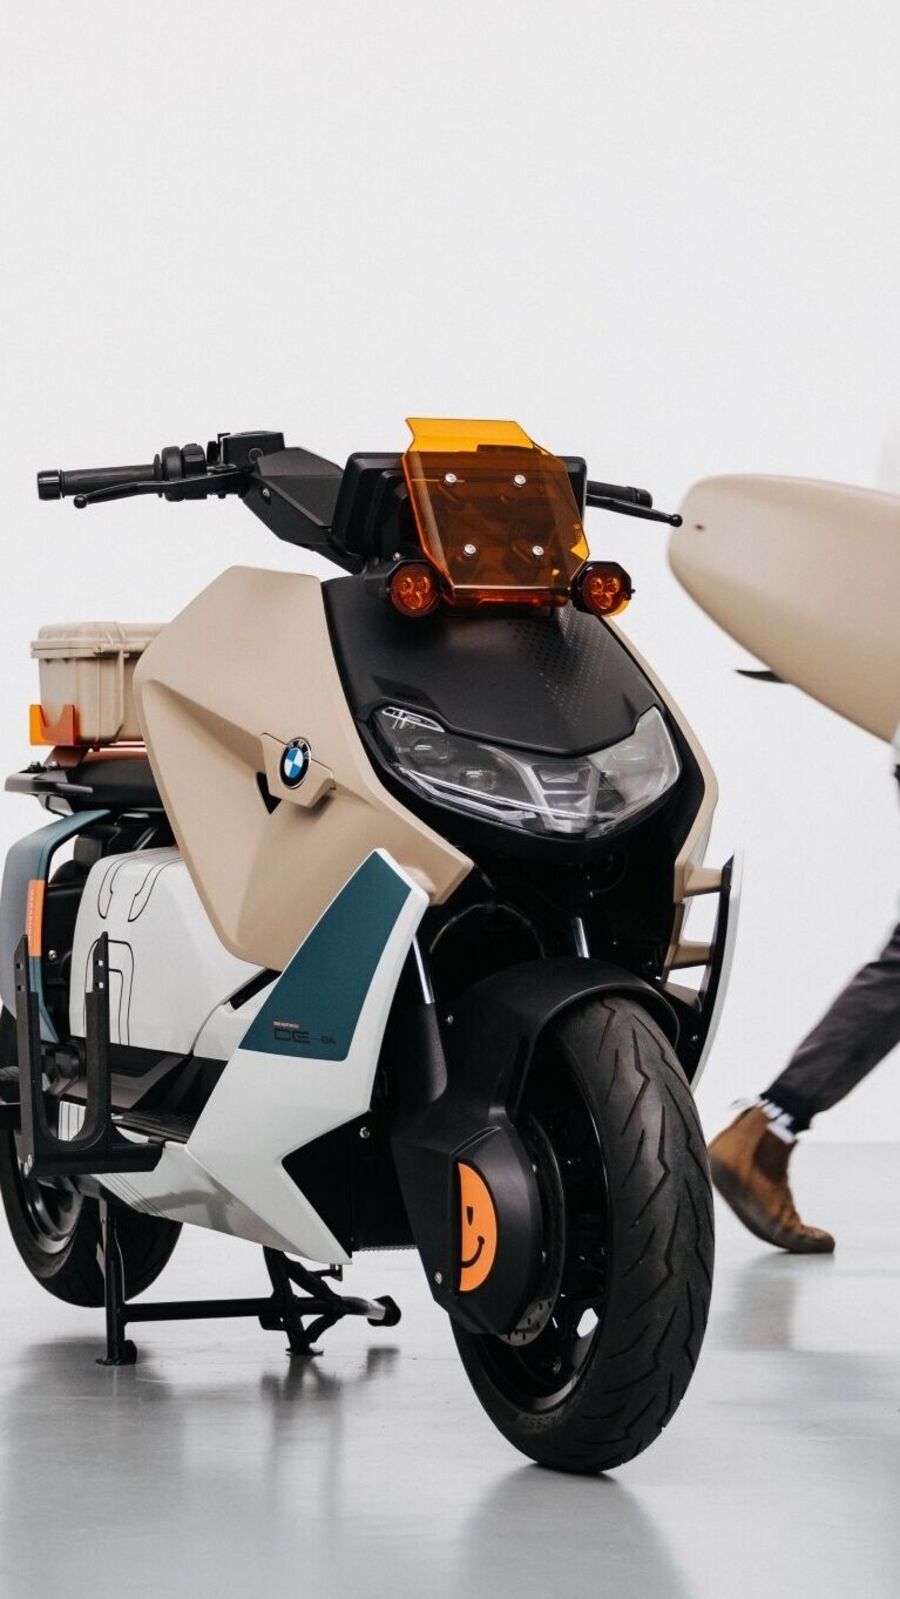 BMW CE 04 Vagabund Moto Concept E-Scooter